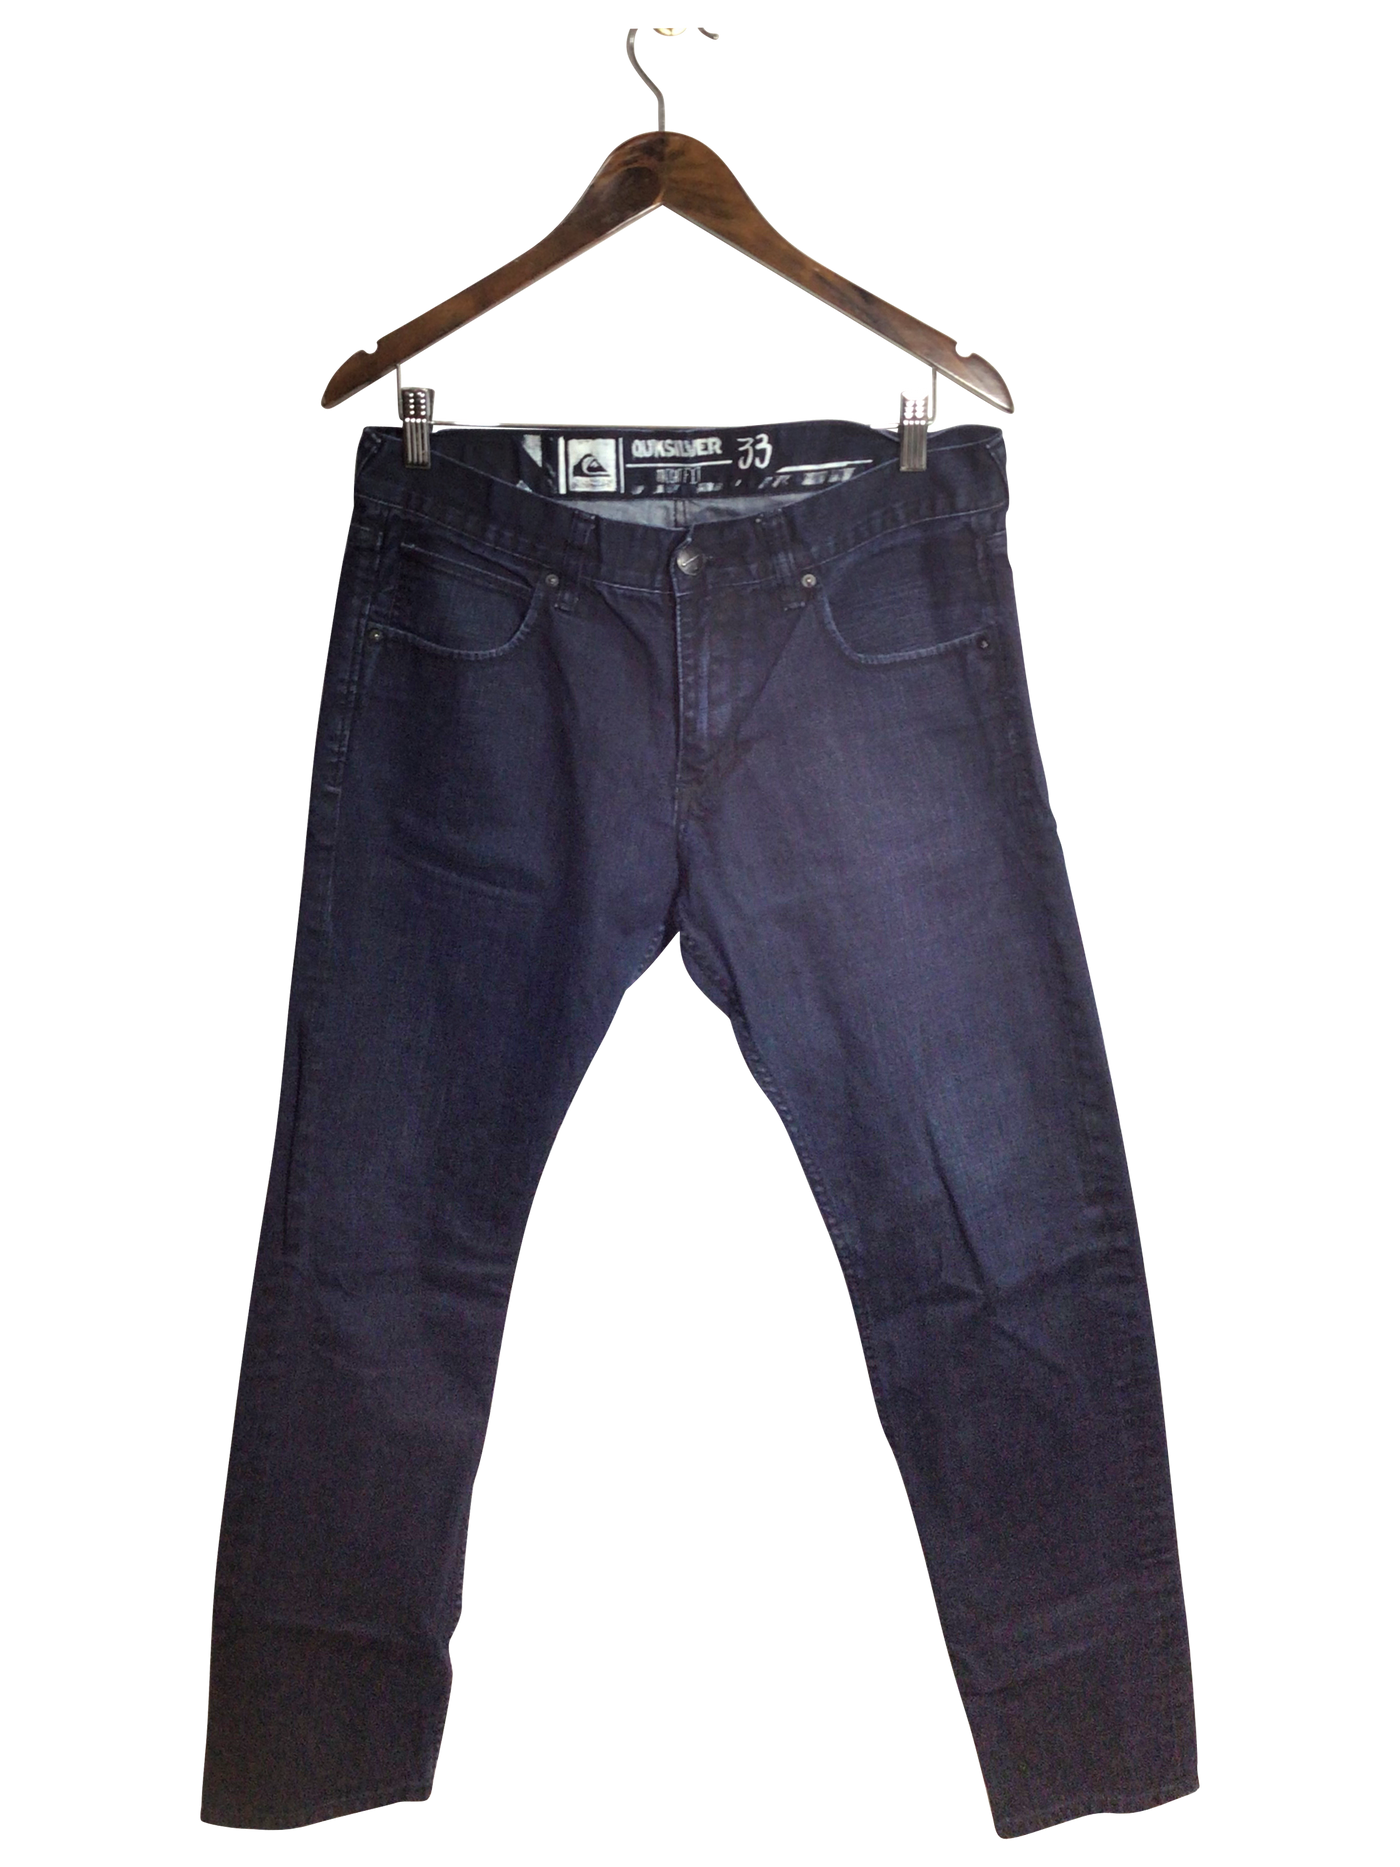 QUICKSILVER Women Straight-Legged Jeans Regular fit in Blue - Size 33 | 15 $ KOOP